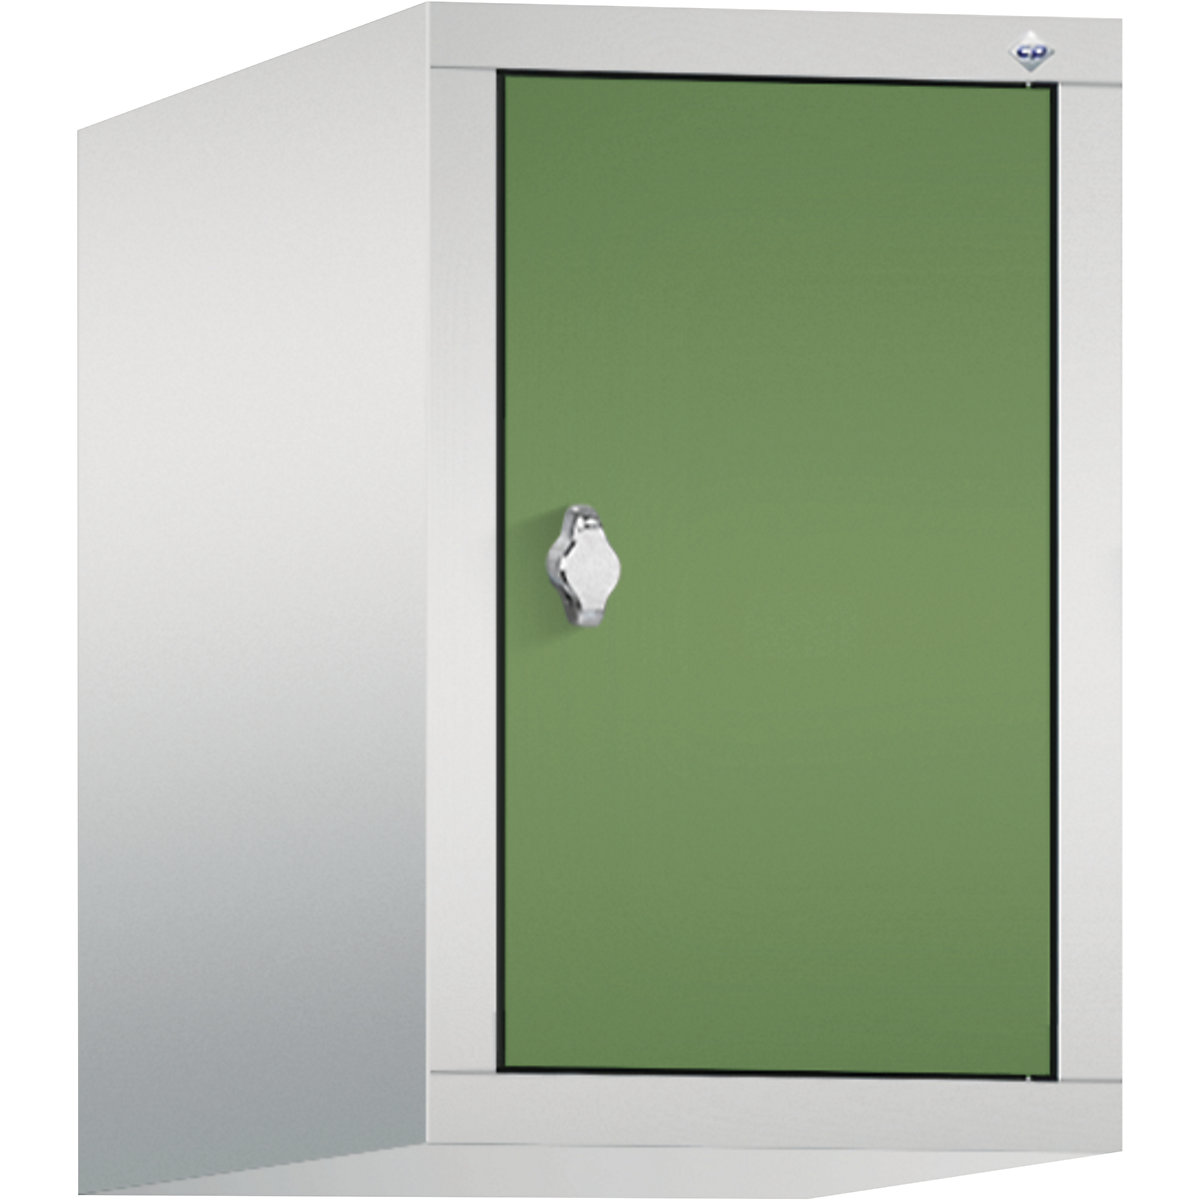 C+P – Altillo CLASSIC, 1 compartimento, anchura de compartimento 300 mm, gris luminoso / verde reseda